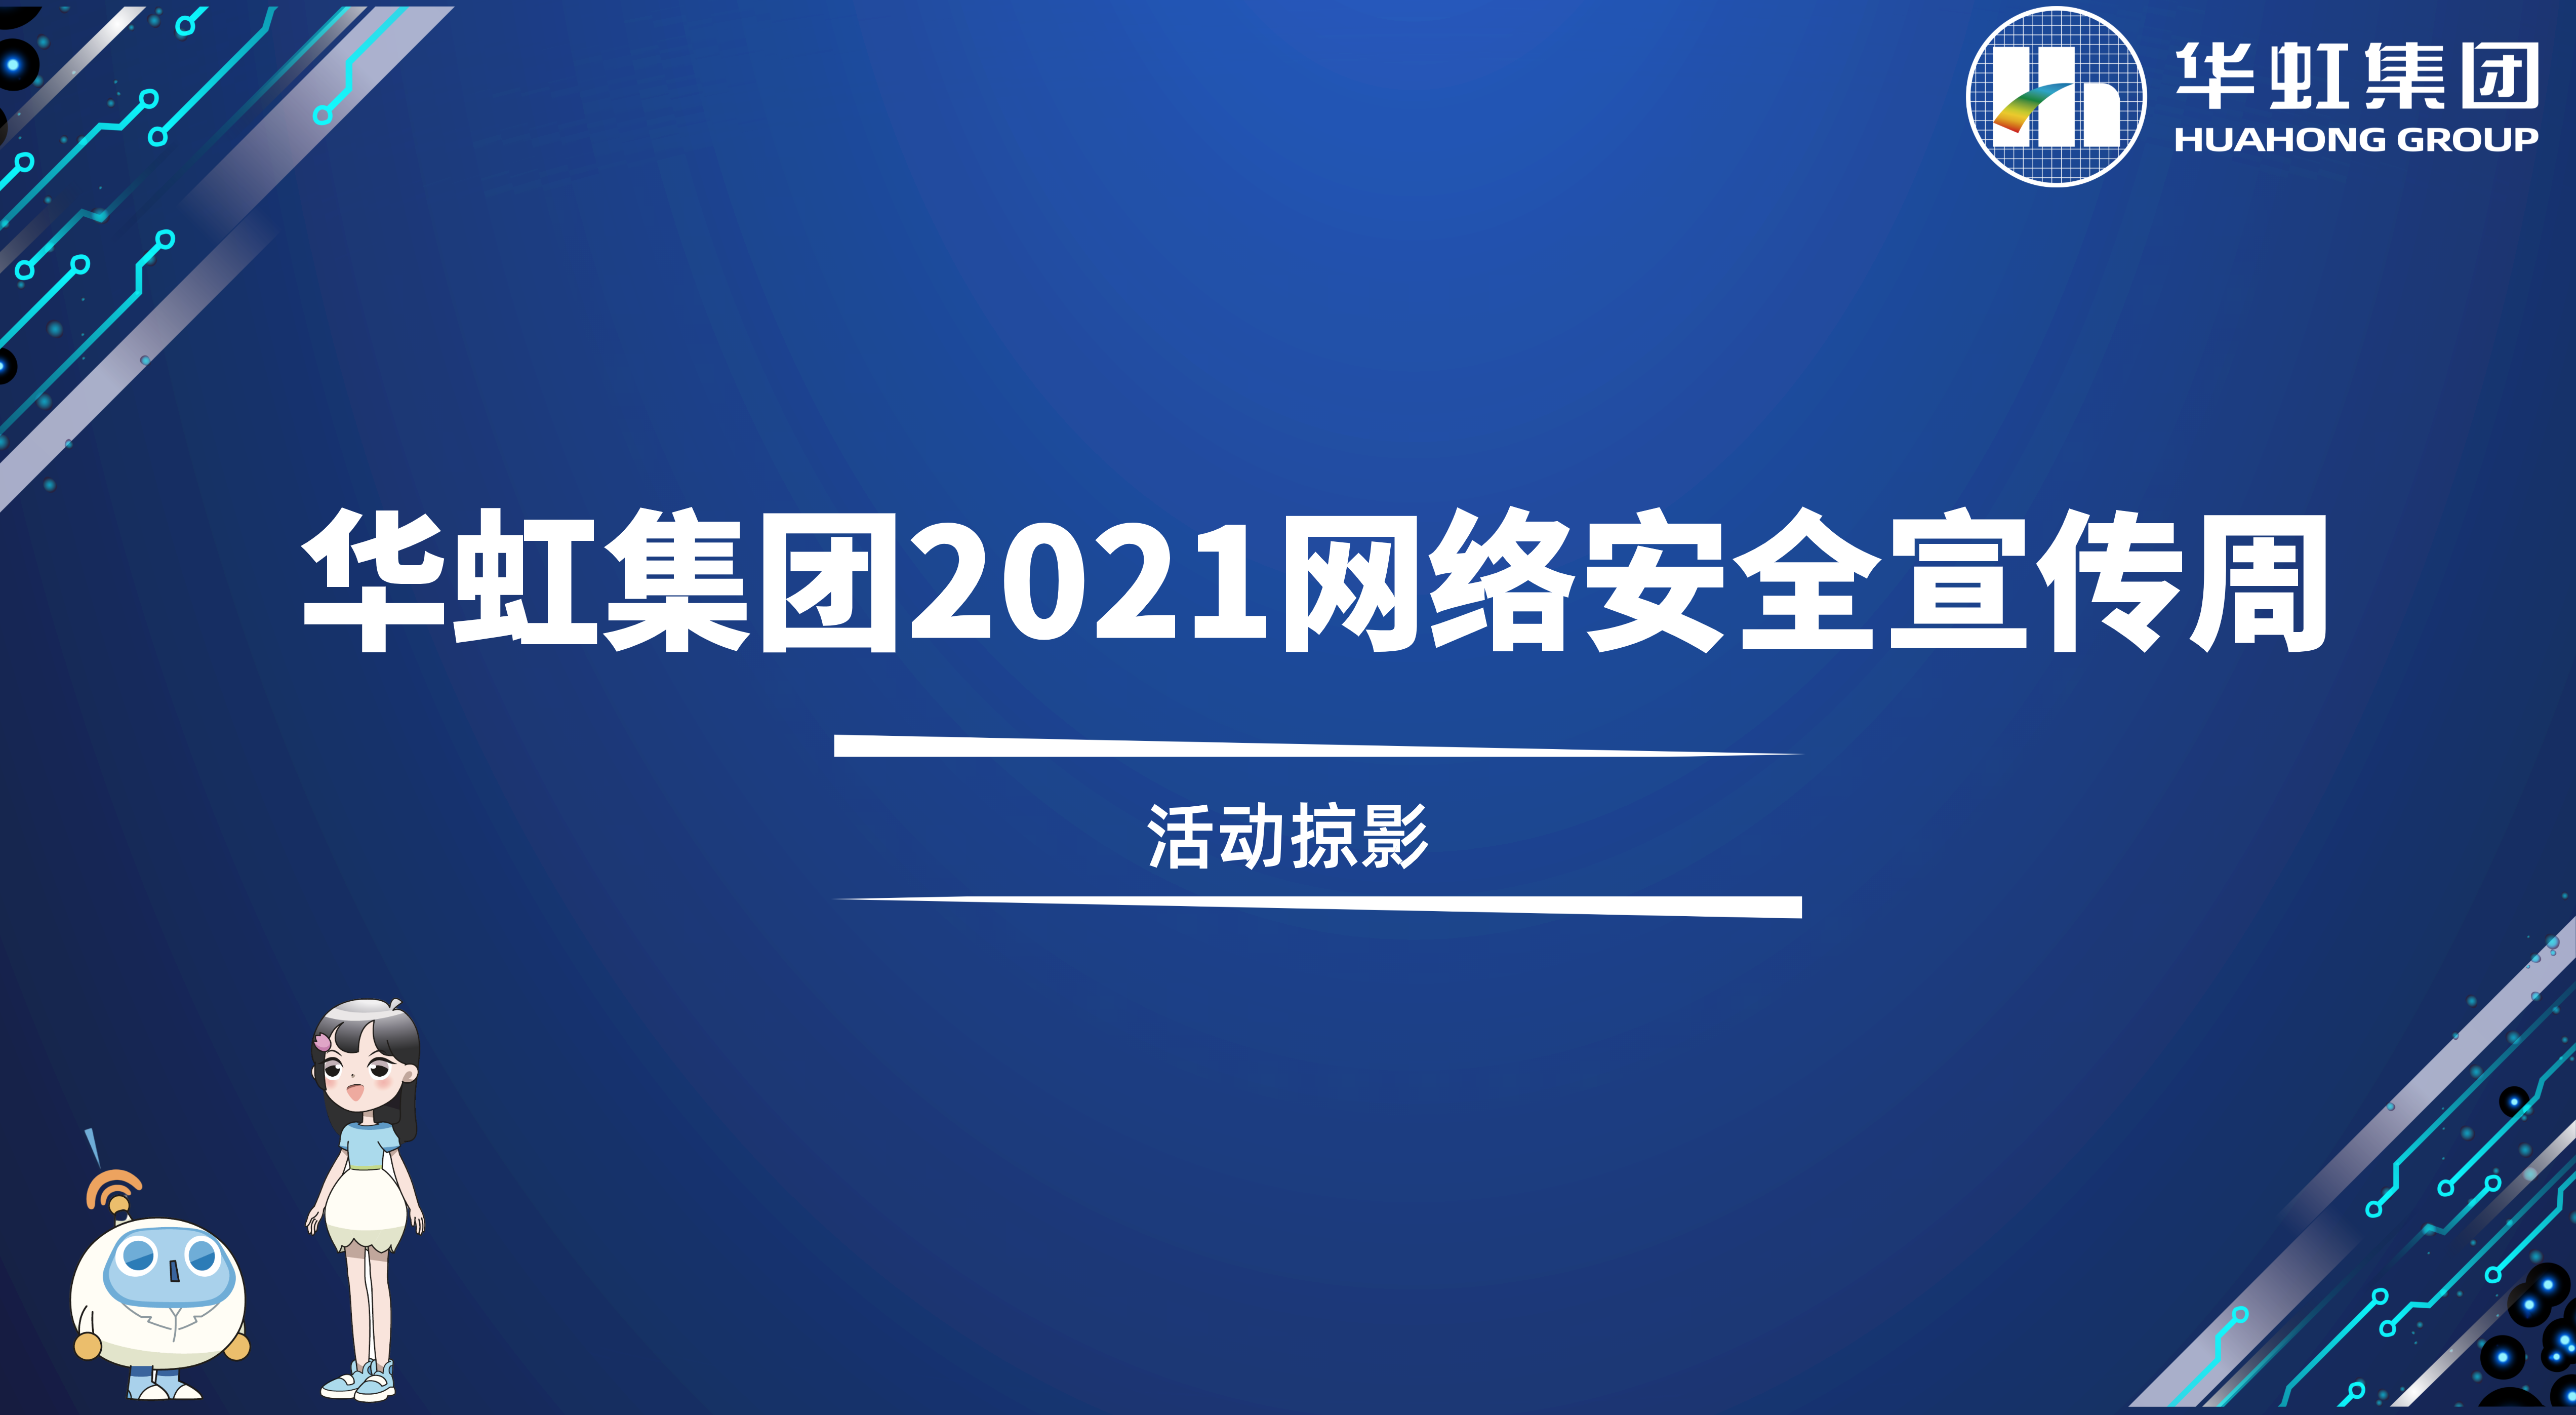 回顾精彩丨买球体育·(中国)官方网站2021网络安全宣传周活动掠影